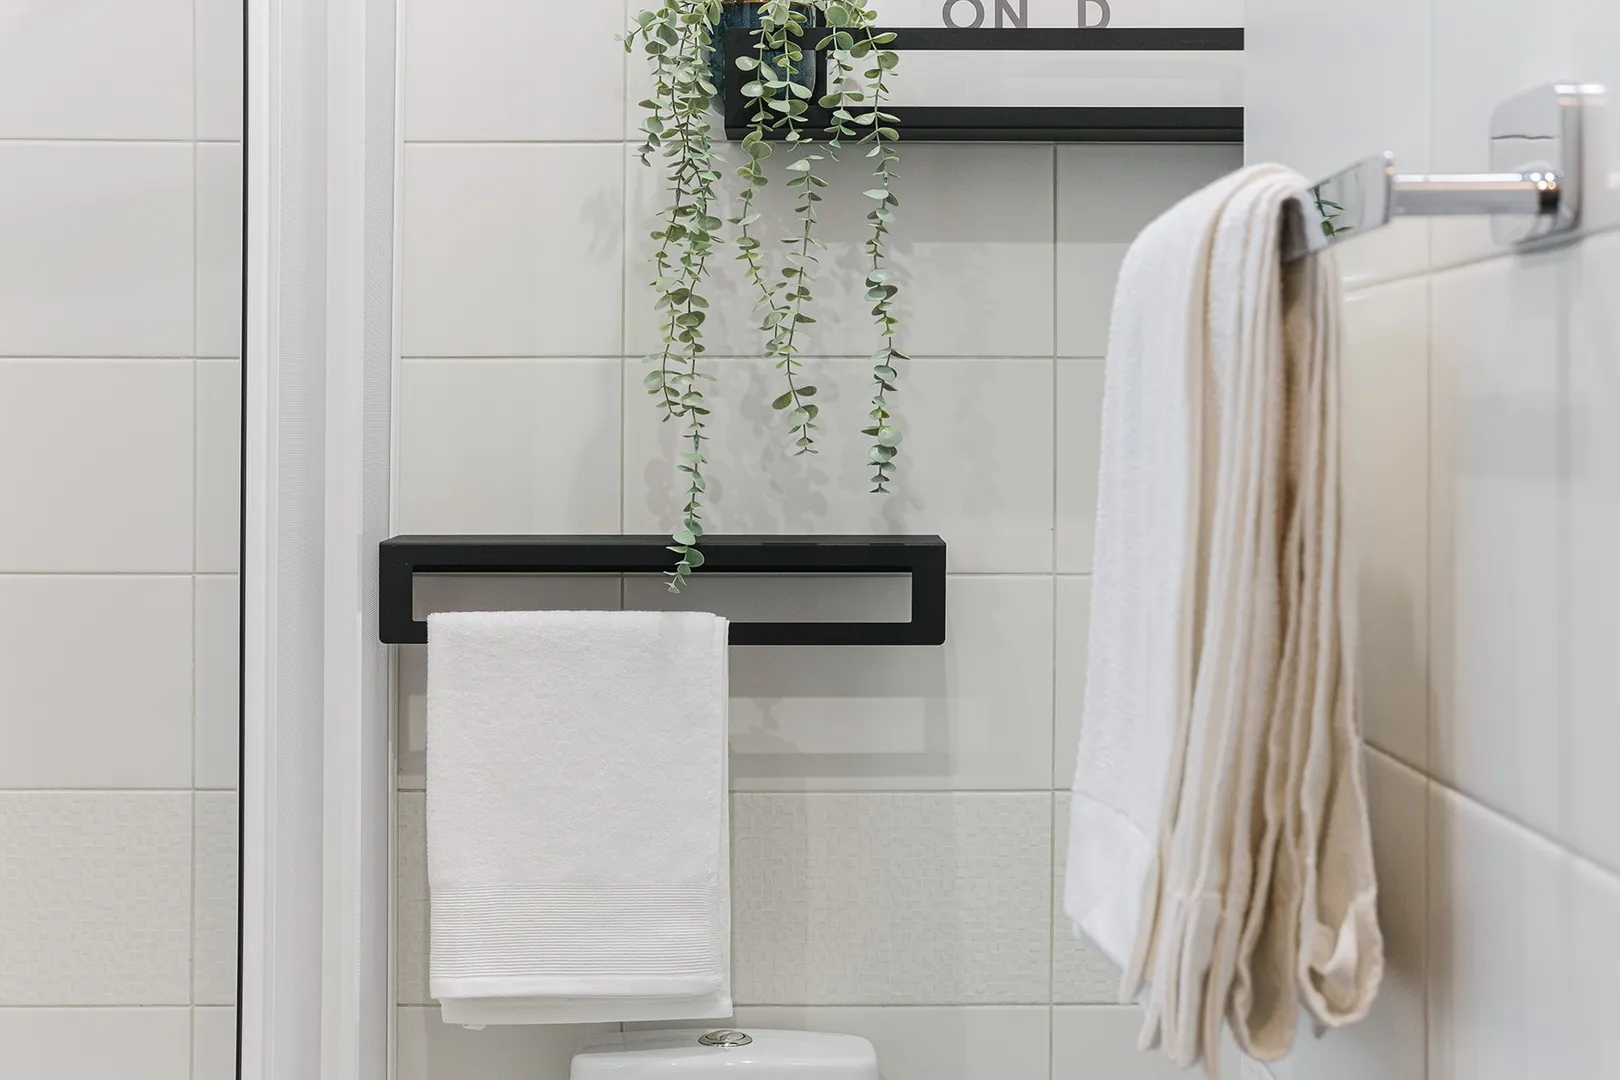 Высококачественные банные полотенца, фен и все необходимое для комфортного пребывания